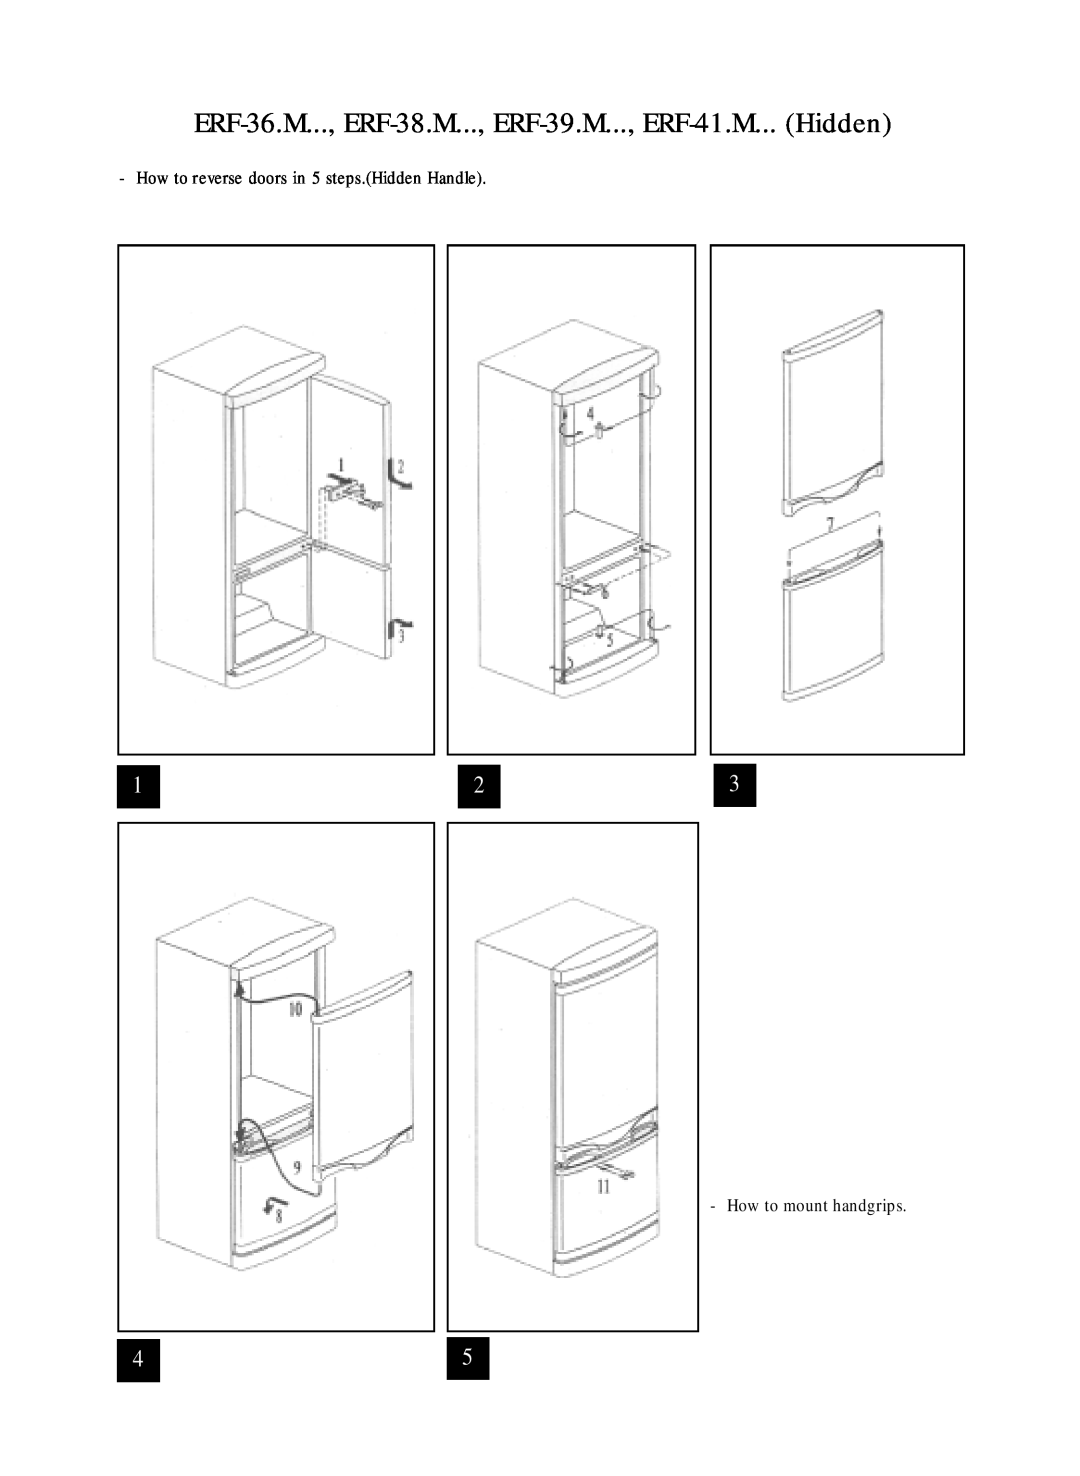 Daewoo manual ERF-36.M..., ERF-38.M..., ERF-39.M..., ERF-41.M... Hidden, How to reverse doors in 5 steps.Hidden Handle 